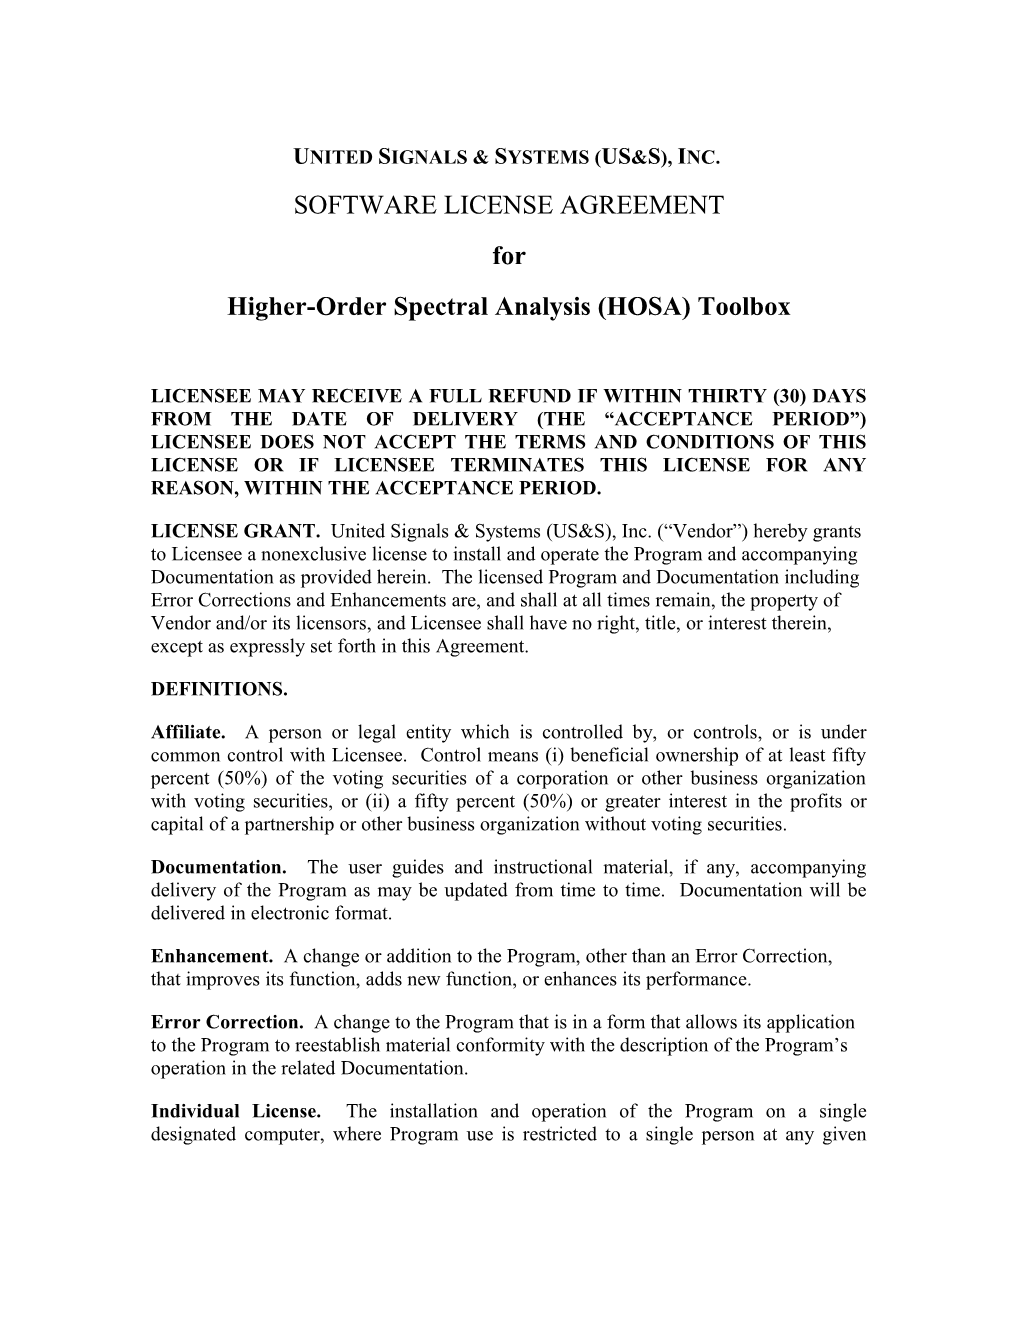 Vendor Software License Agreement